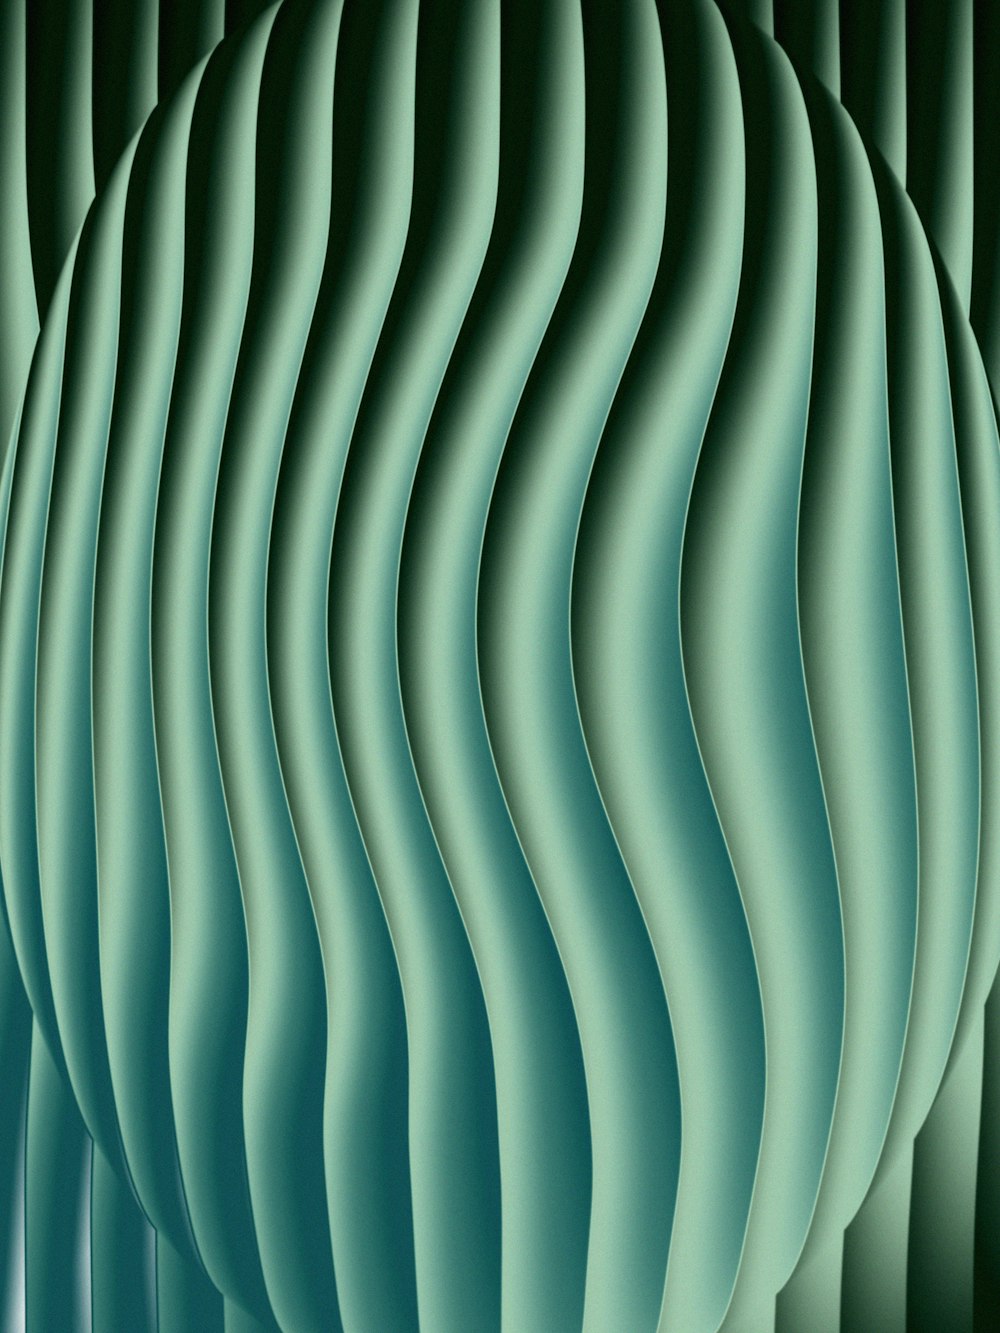 Un fondo abstracto verde con líneas onduladas